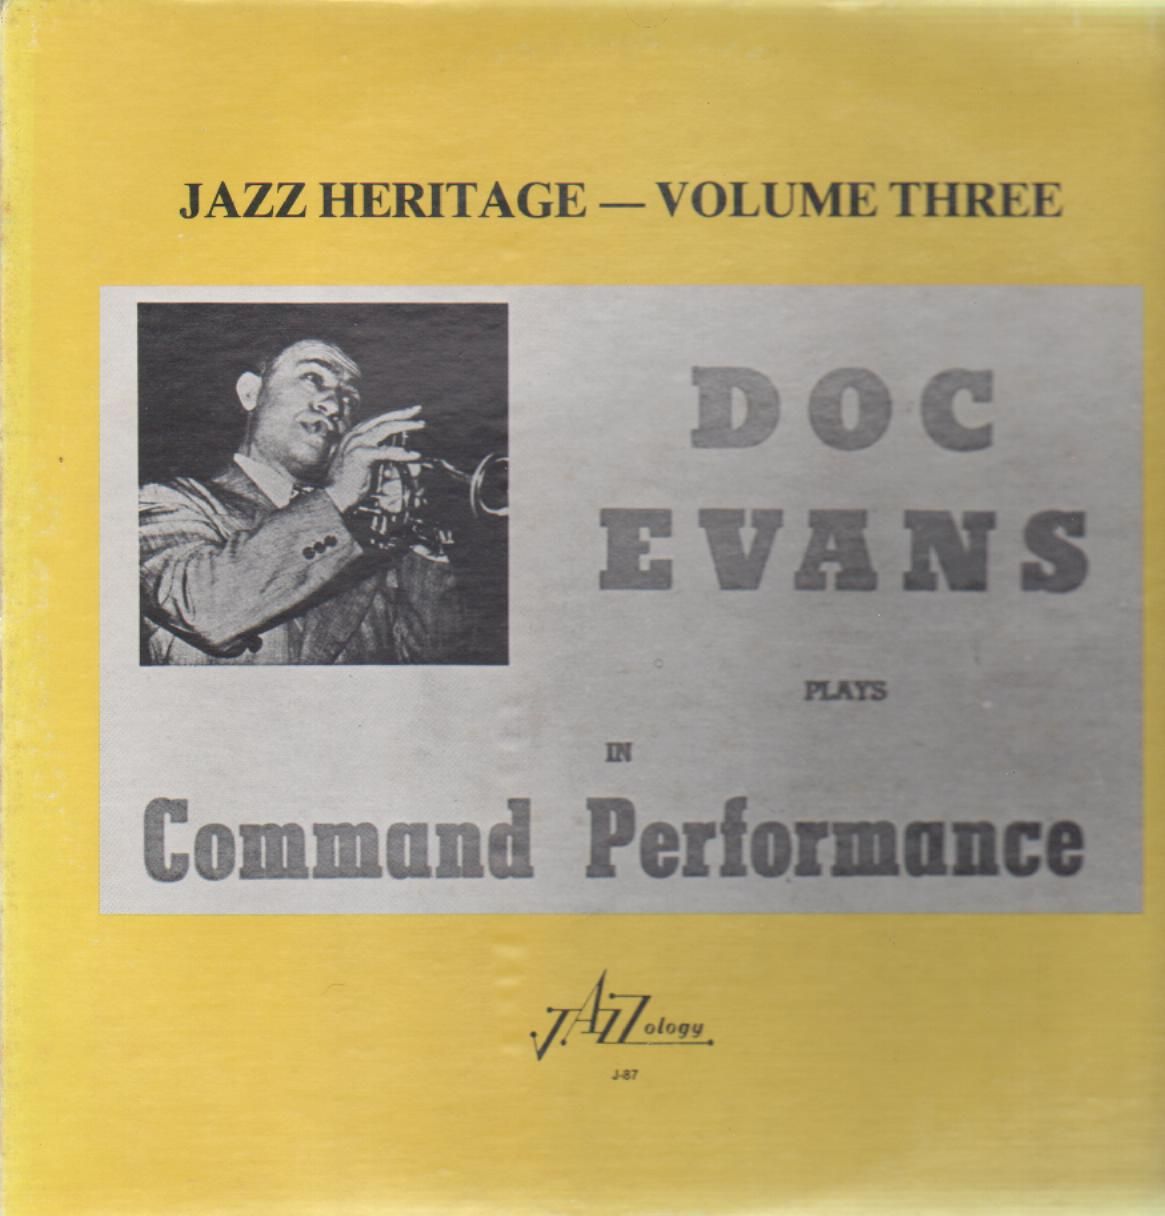 DOC EVANS - Jazz Heritage - Volume Three cover 